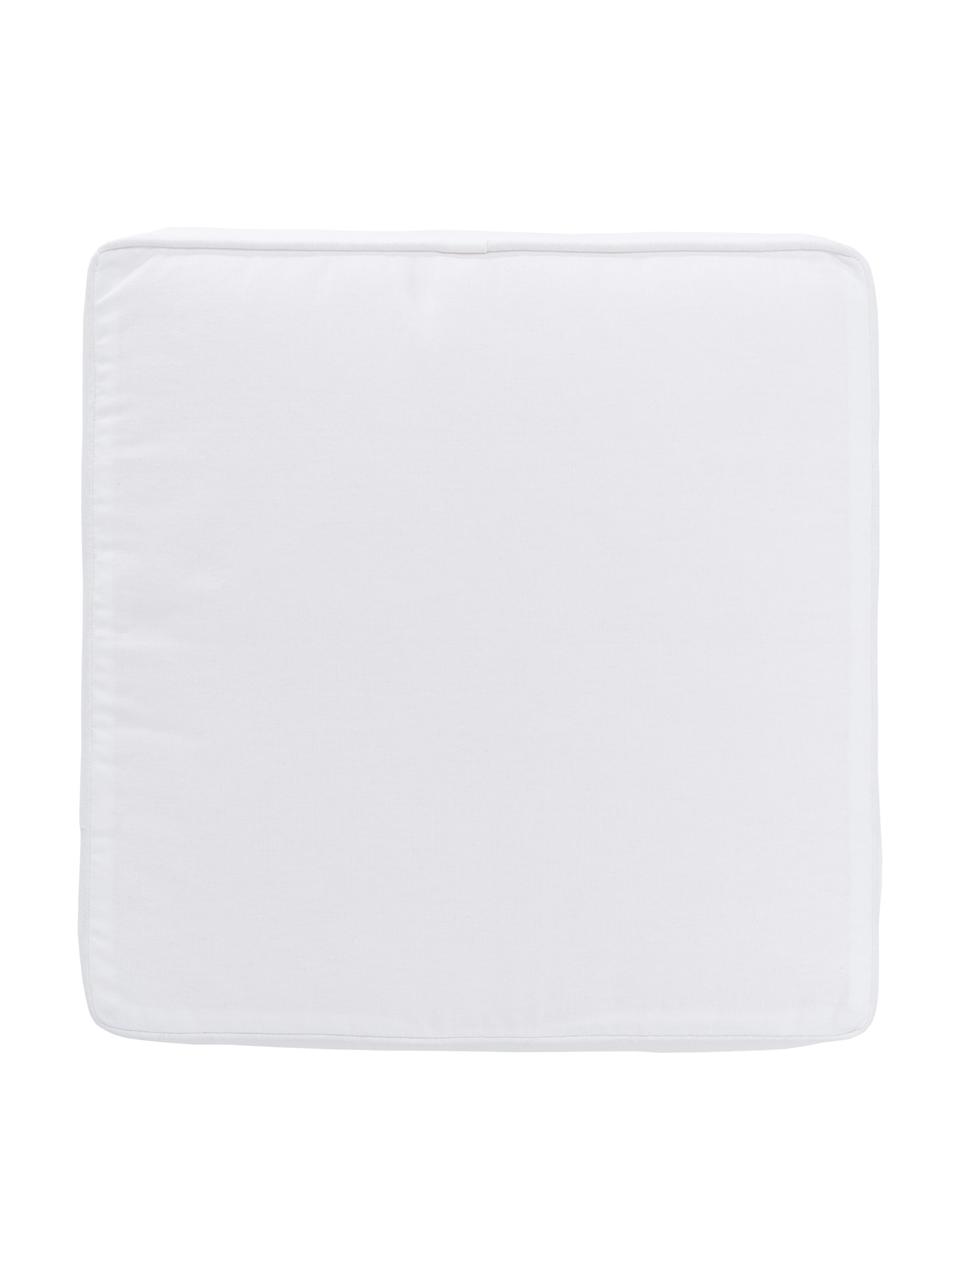 Hohes Baumwoll-Sitzkissen Zoey in Weiß, Bezug: 100% Baumwolle, Weiß, B 40 x L 40 cm